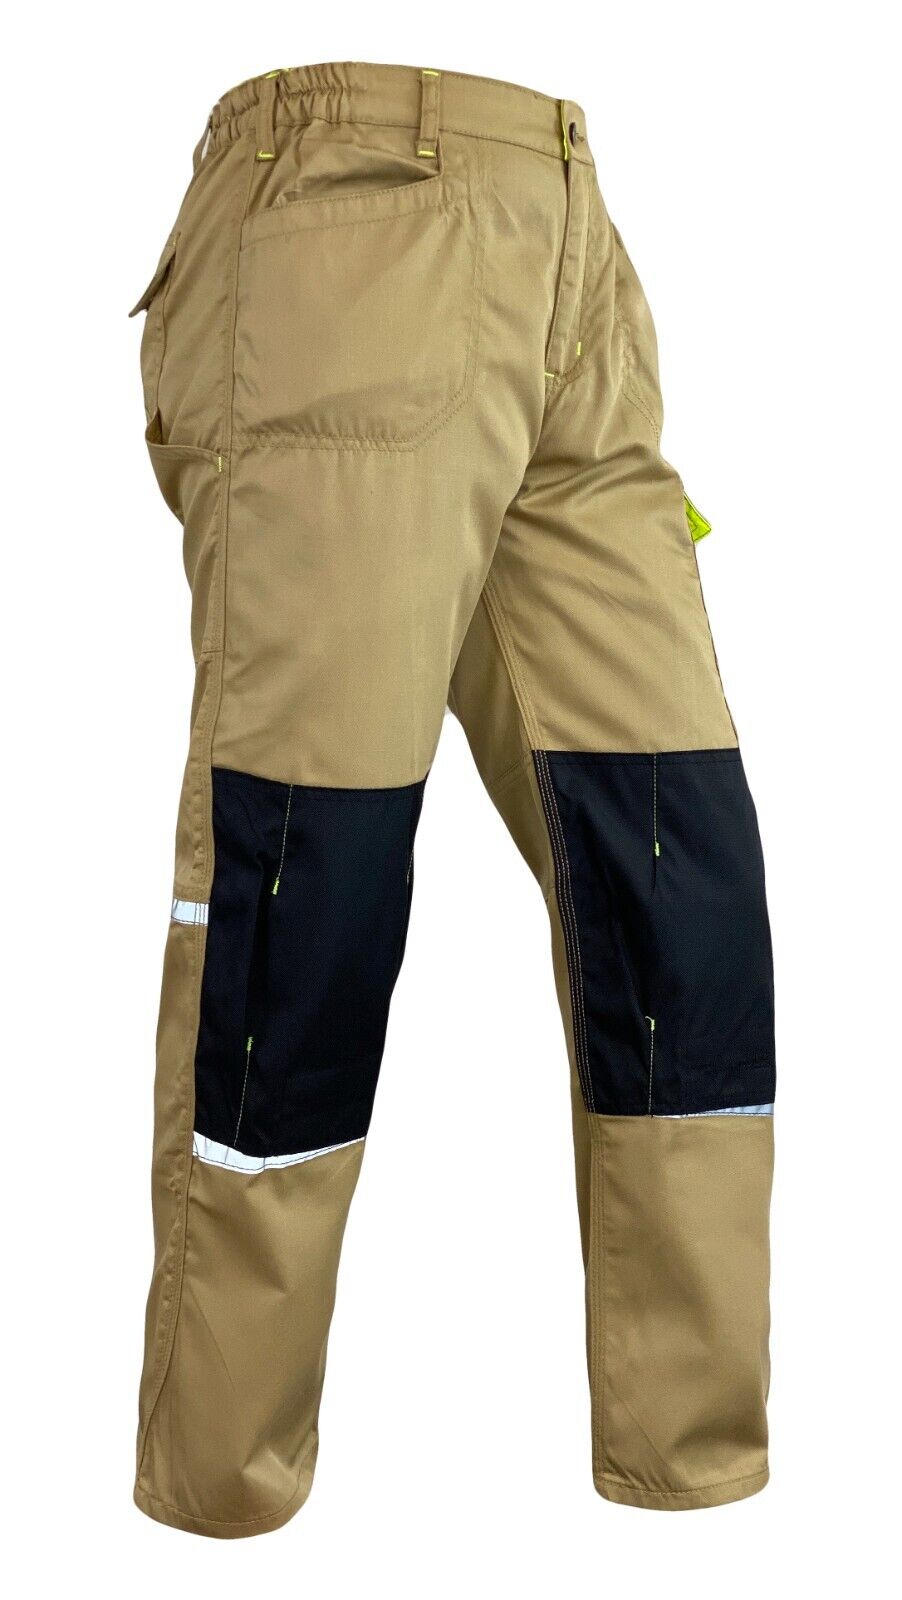 SkylineWears Men’s Heavy Duty Tactical Pants Cordura Knee Reinforced Safety Work Trousers